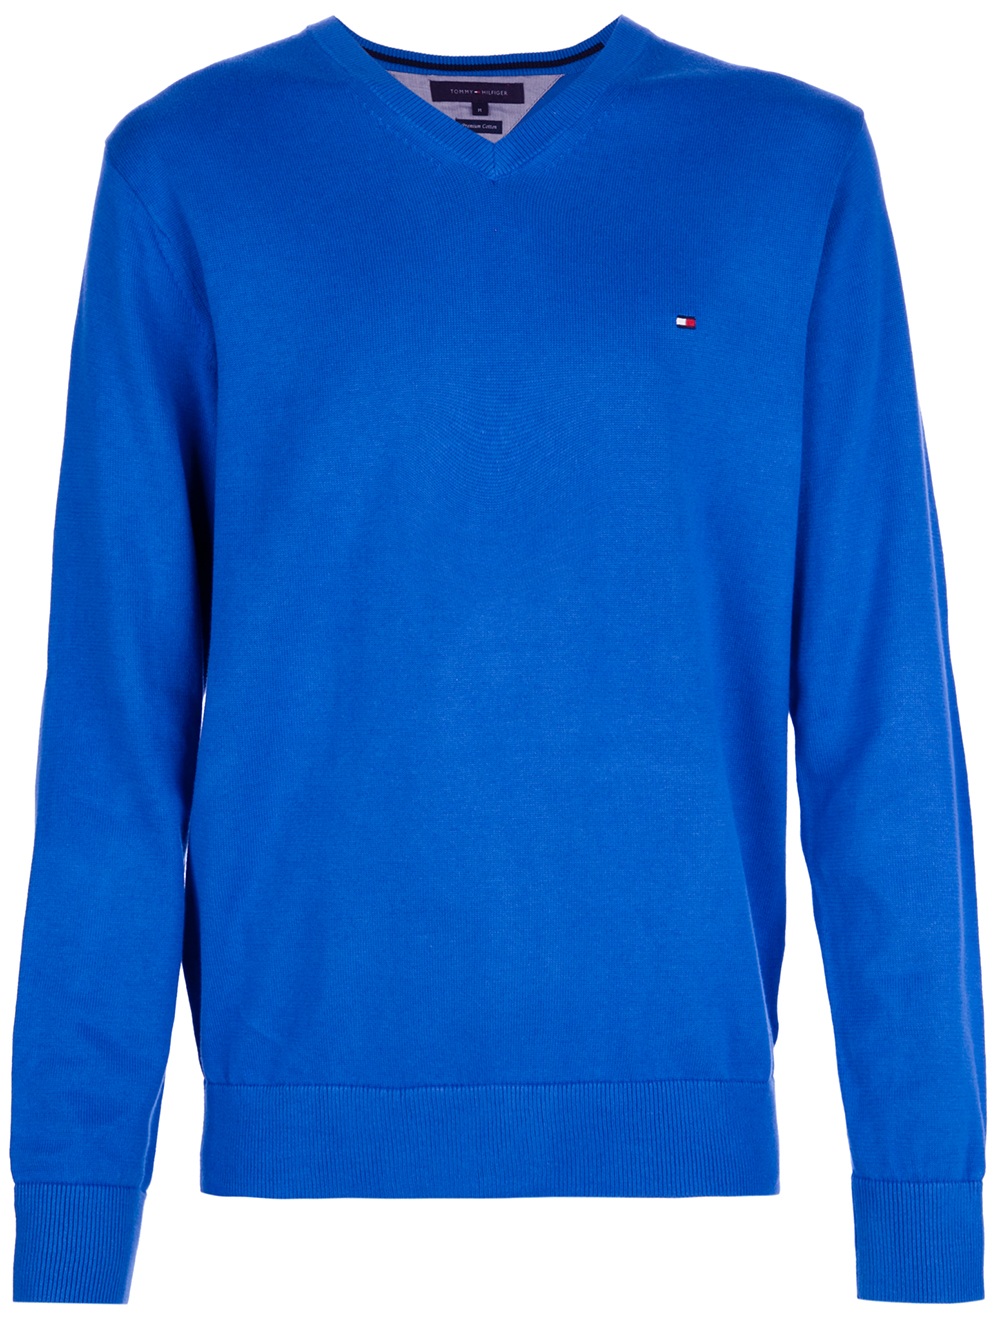 Tommy Hilfiger V-Neck Sweater in Blue for Men - Lyst